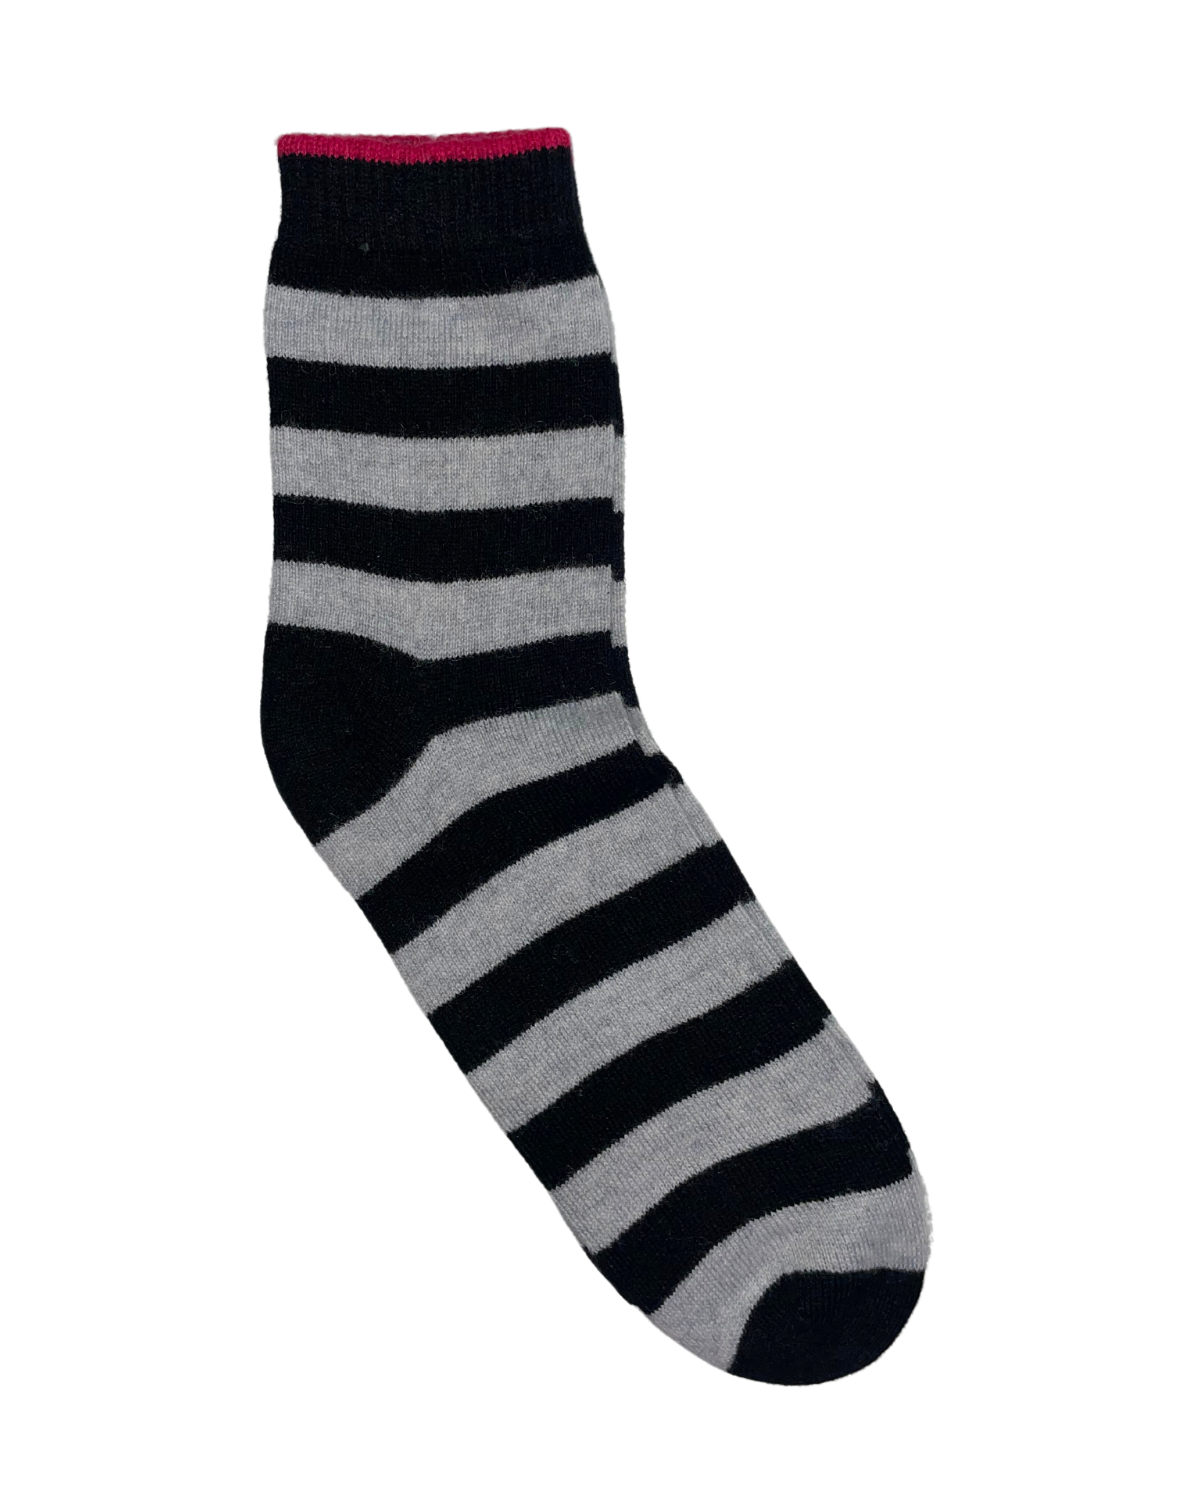 Stripe Socks (Black/Super Grey)